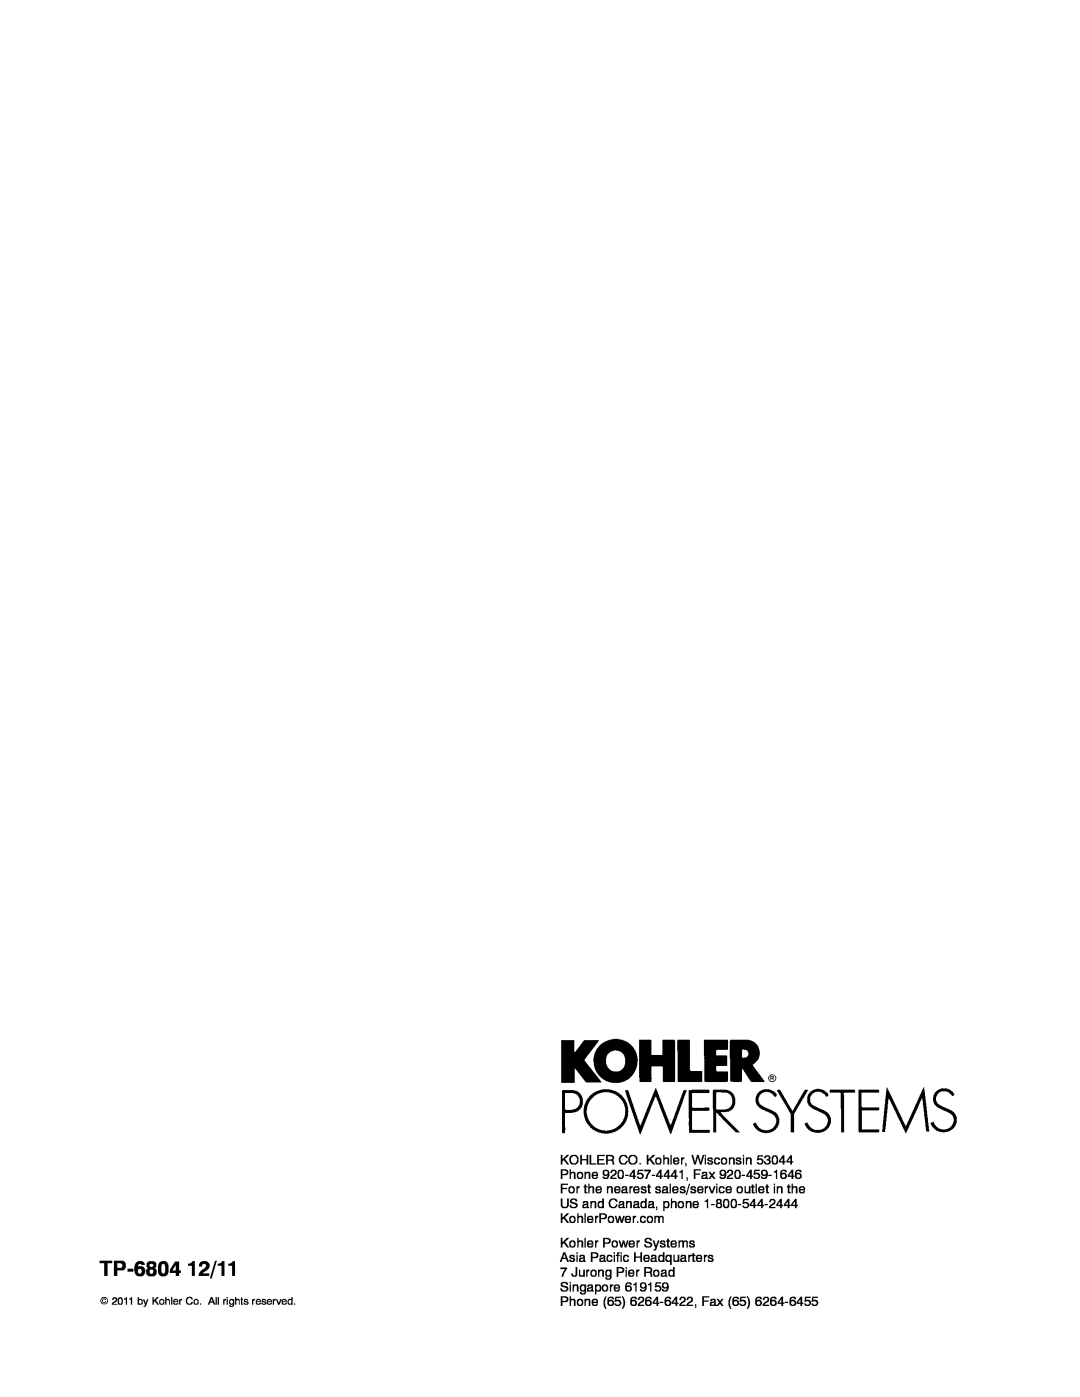 Kohler 14/20RESAL manual TP-6804 12/11, Kohler Power Systems Asia Pacific Headquarters 7 Jurong Pier Road 